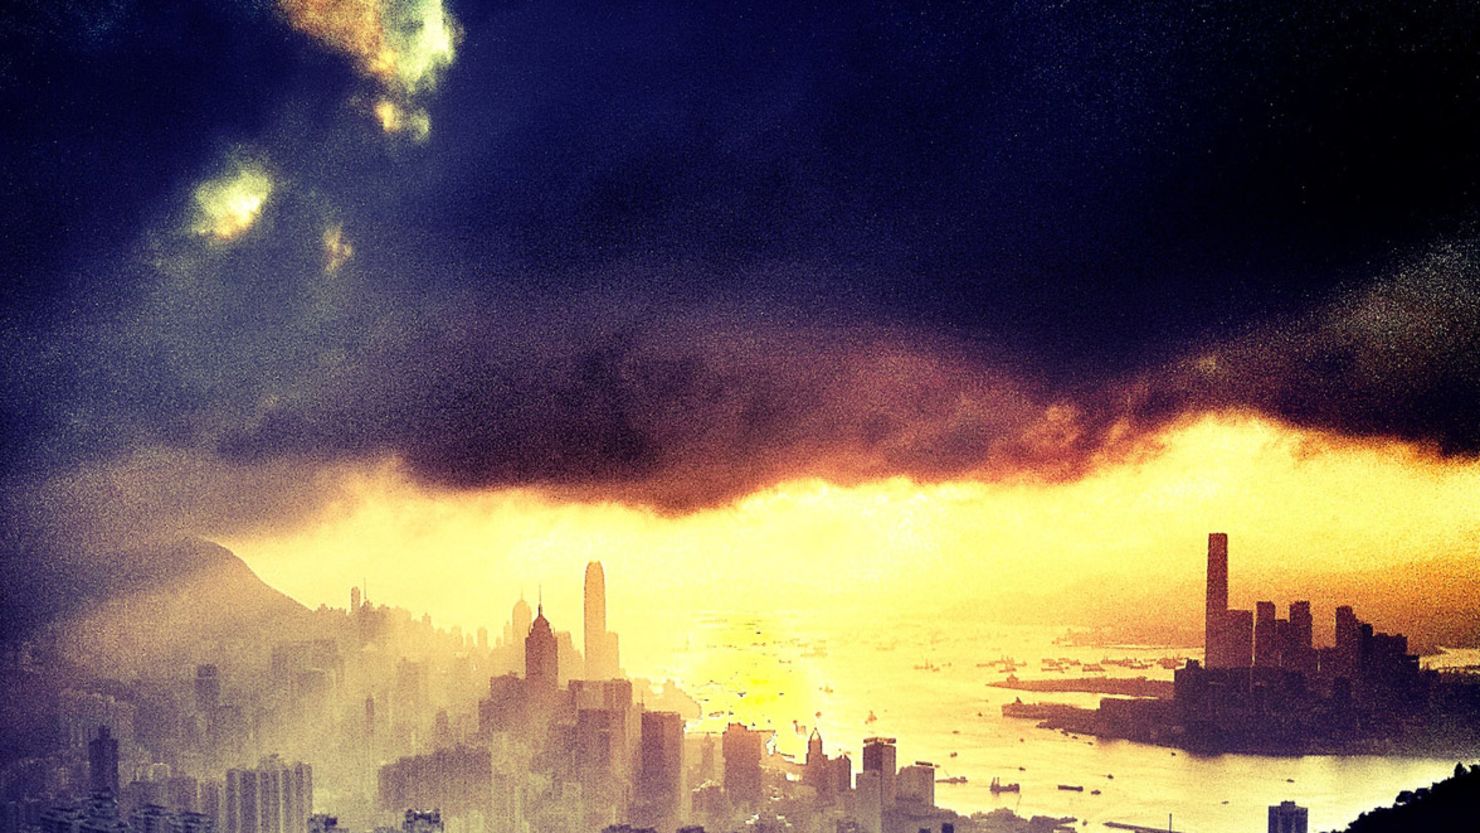 An Instagram photo of the Hong Kong skyline by Tyson Wheatley, a Senior Editor for CNN.com.